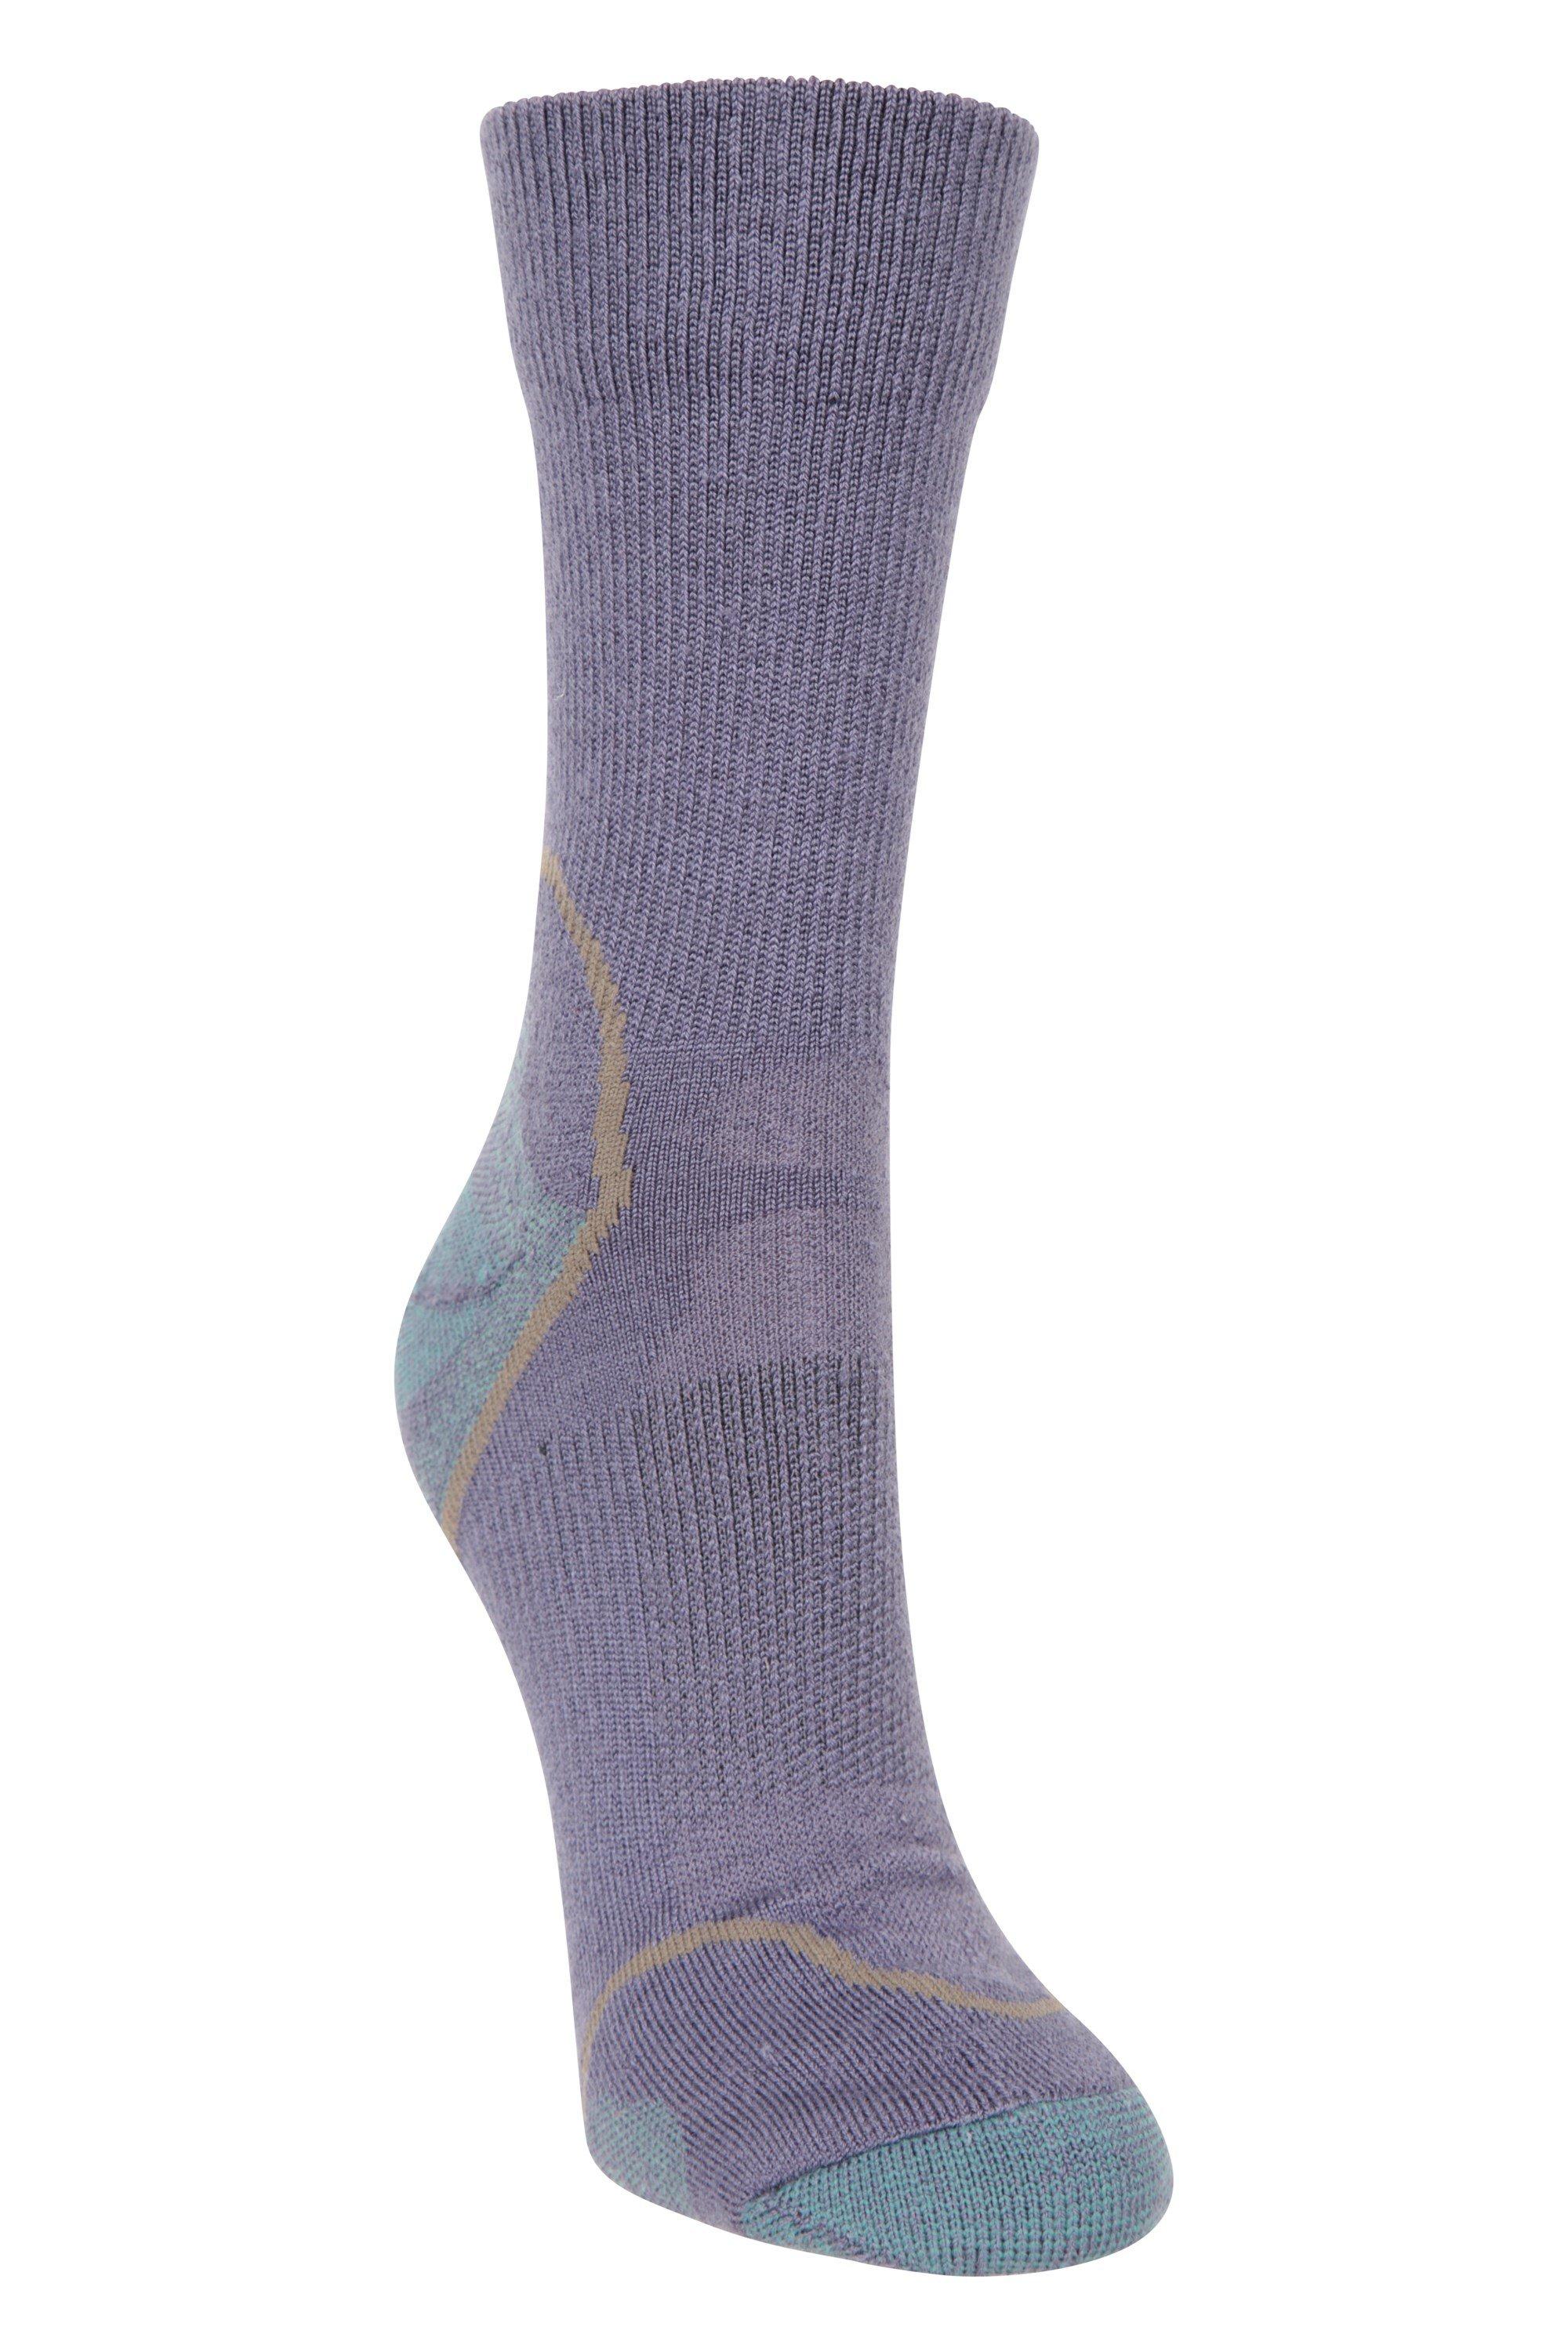 Merino Hiker  Quarter Length Socks  Sports Sock